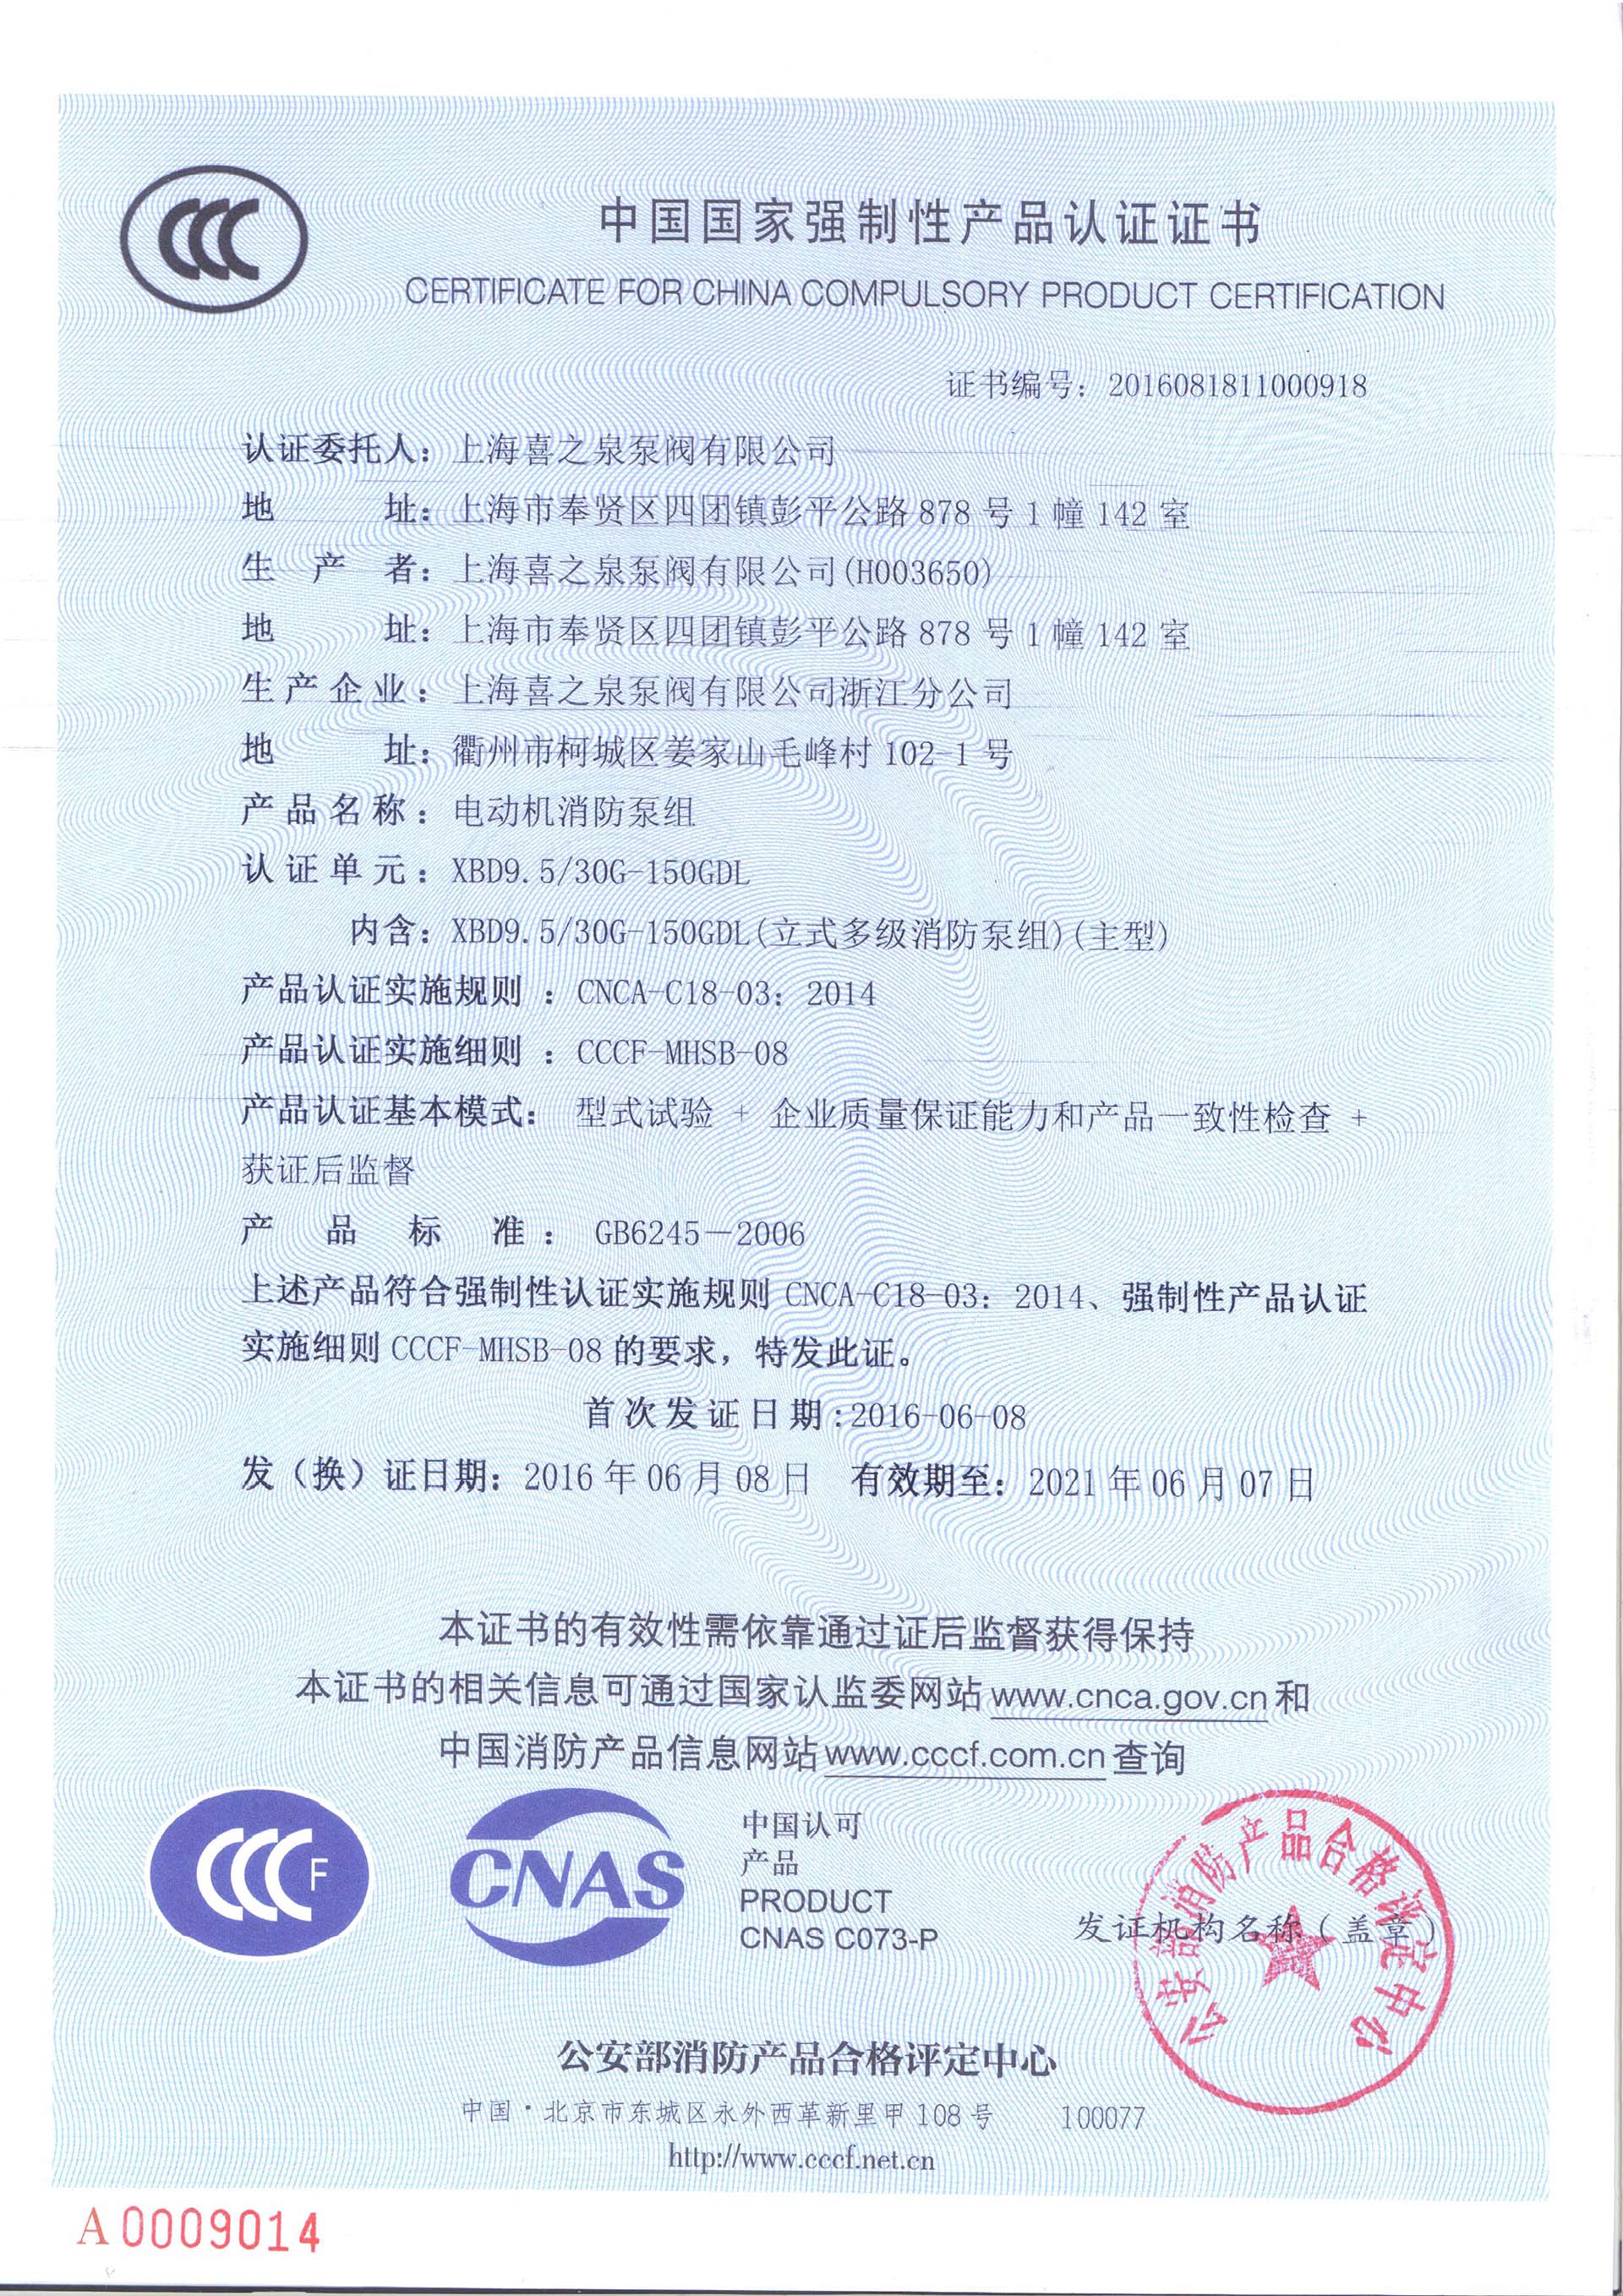 CCCF certificate